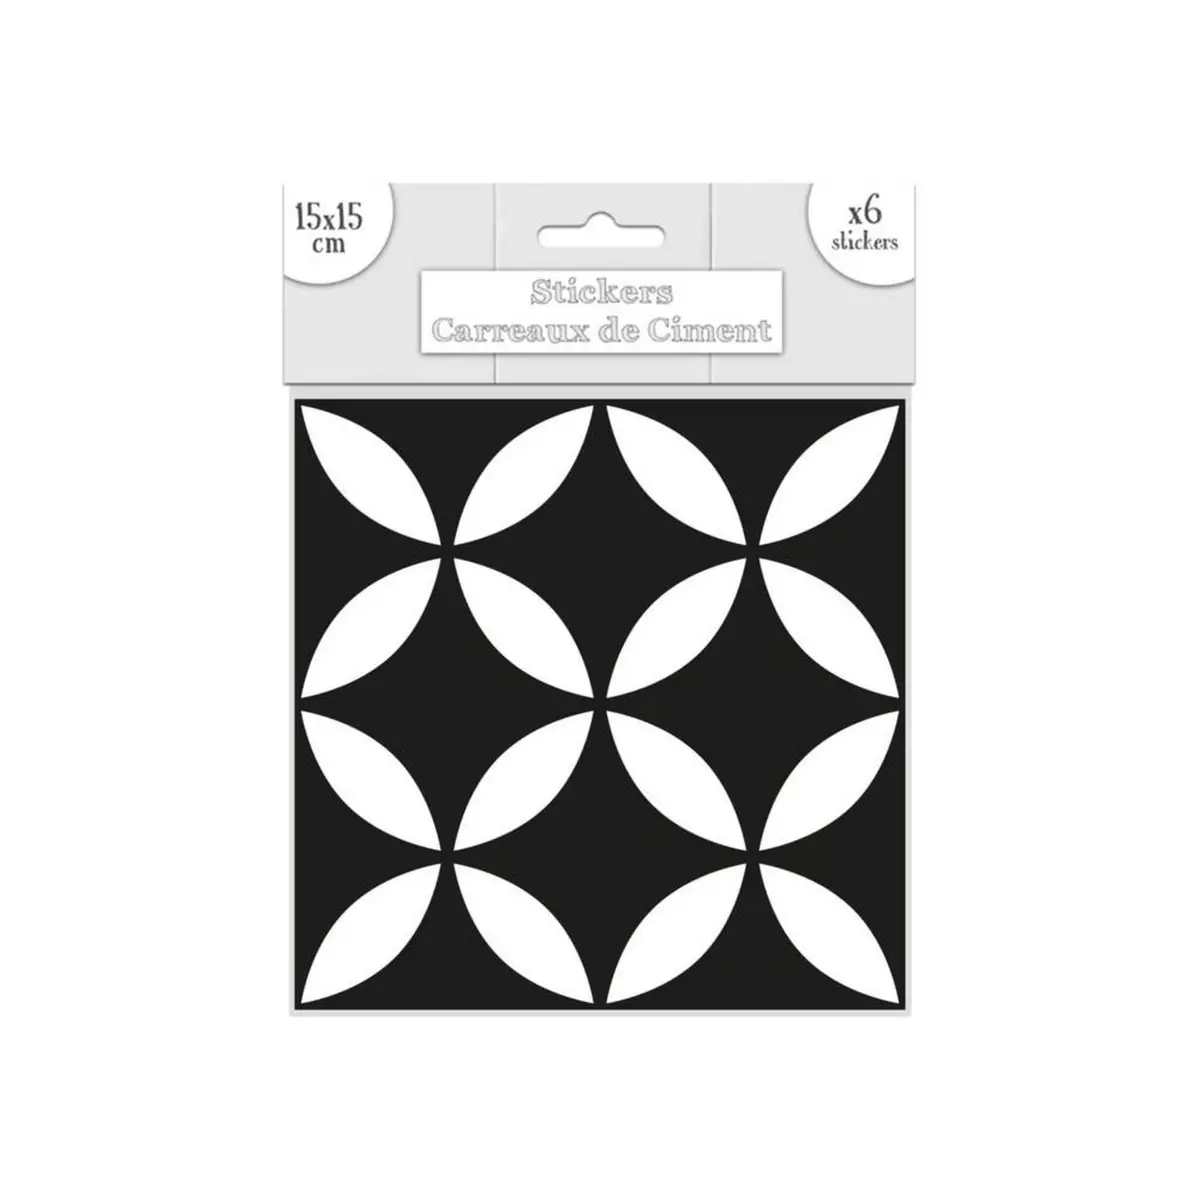 SUD TRADING 6 Stickers carreaux de ciment - 15 x 15 cm - Motif géométrique Noir et blanc